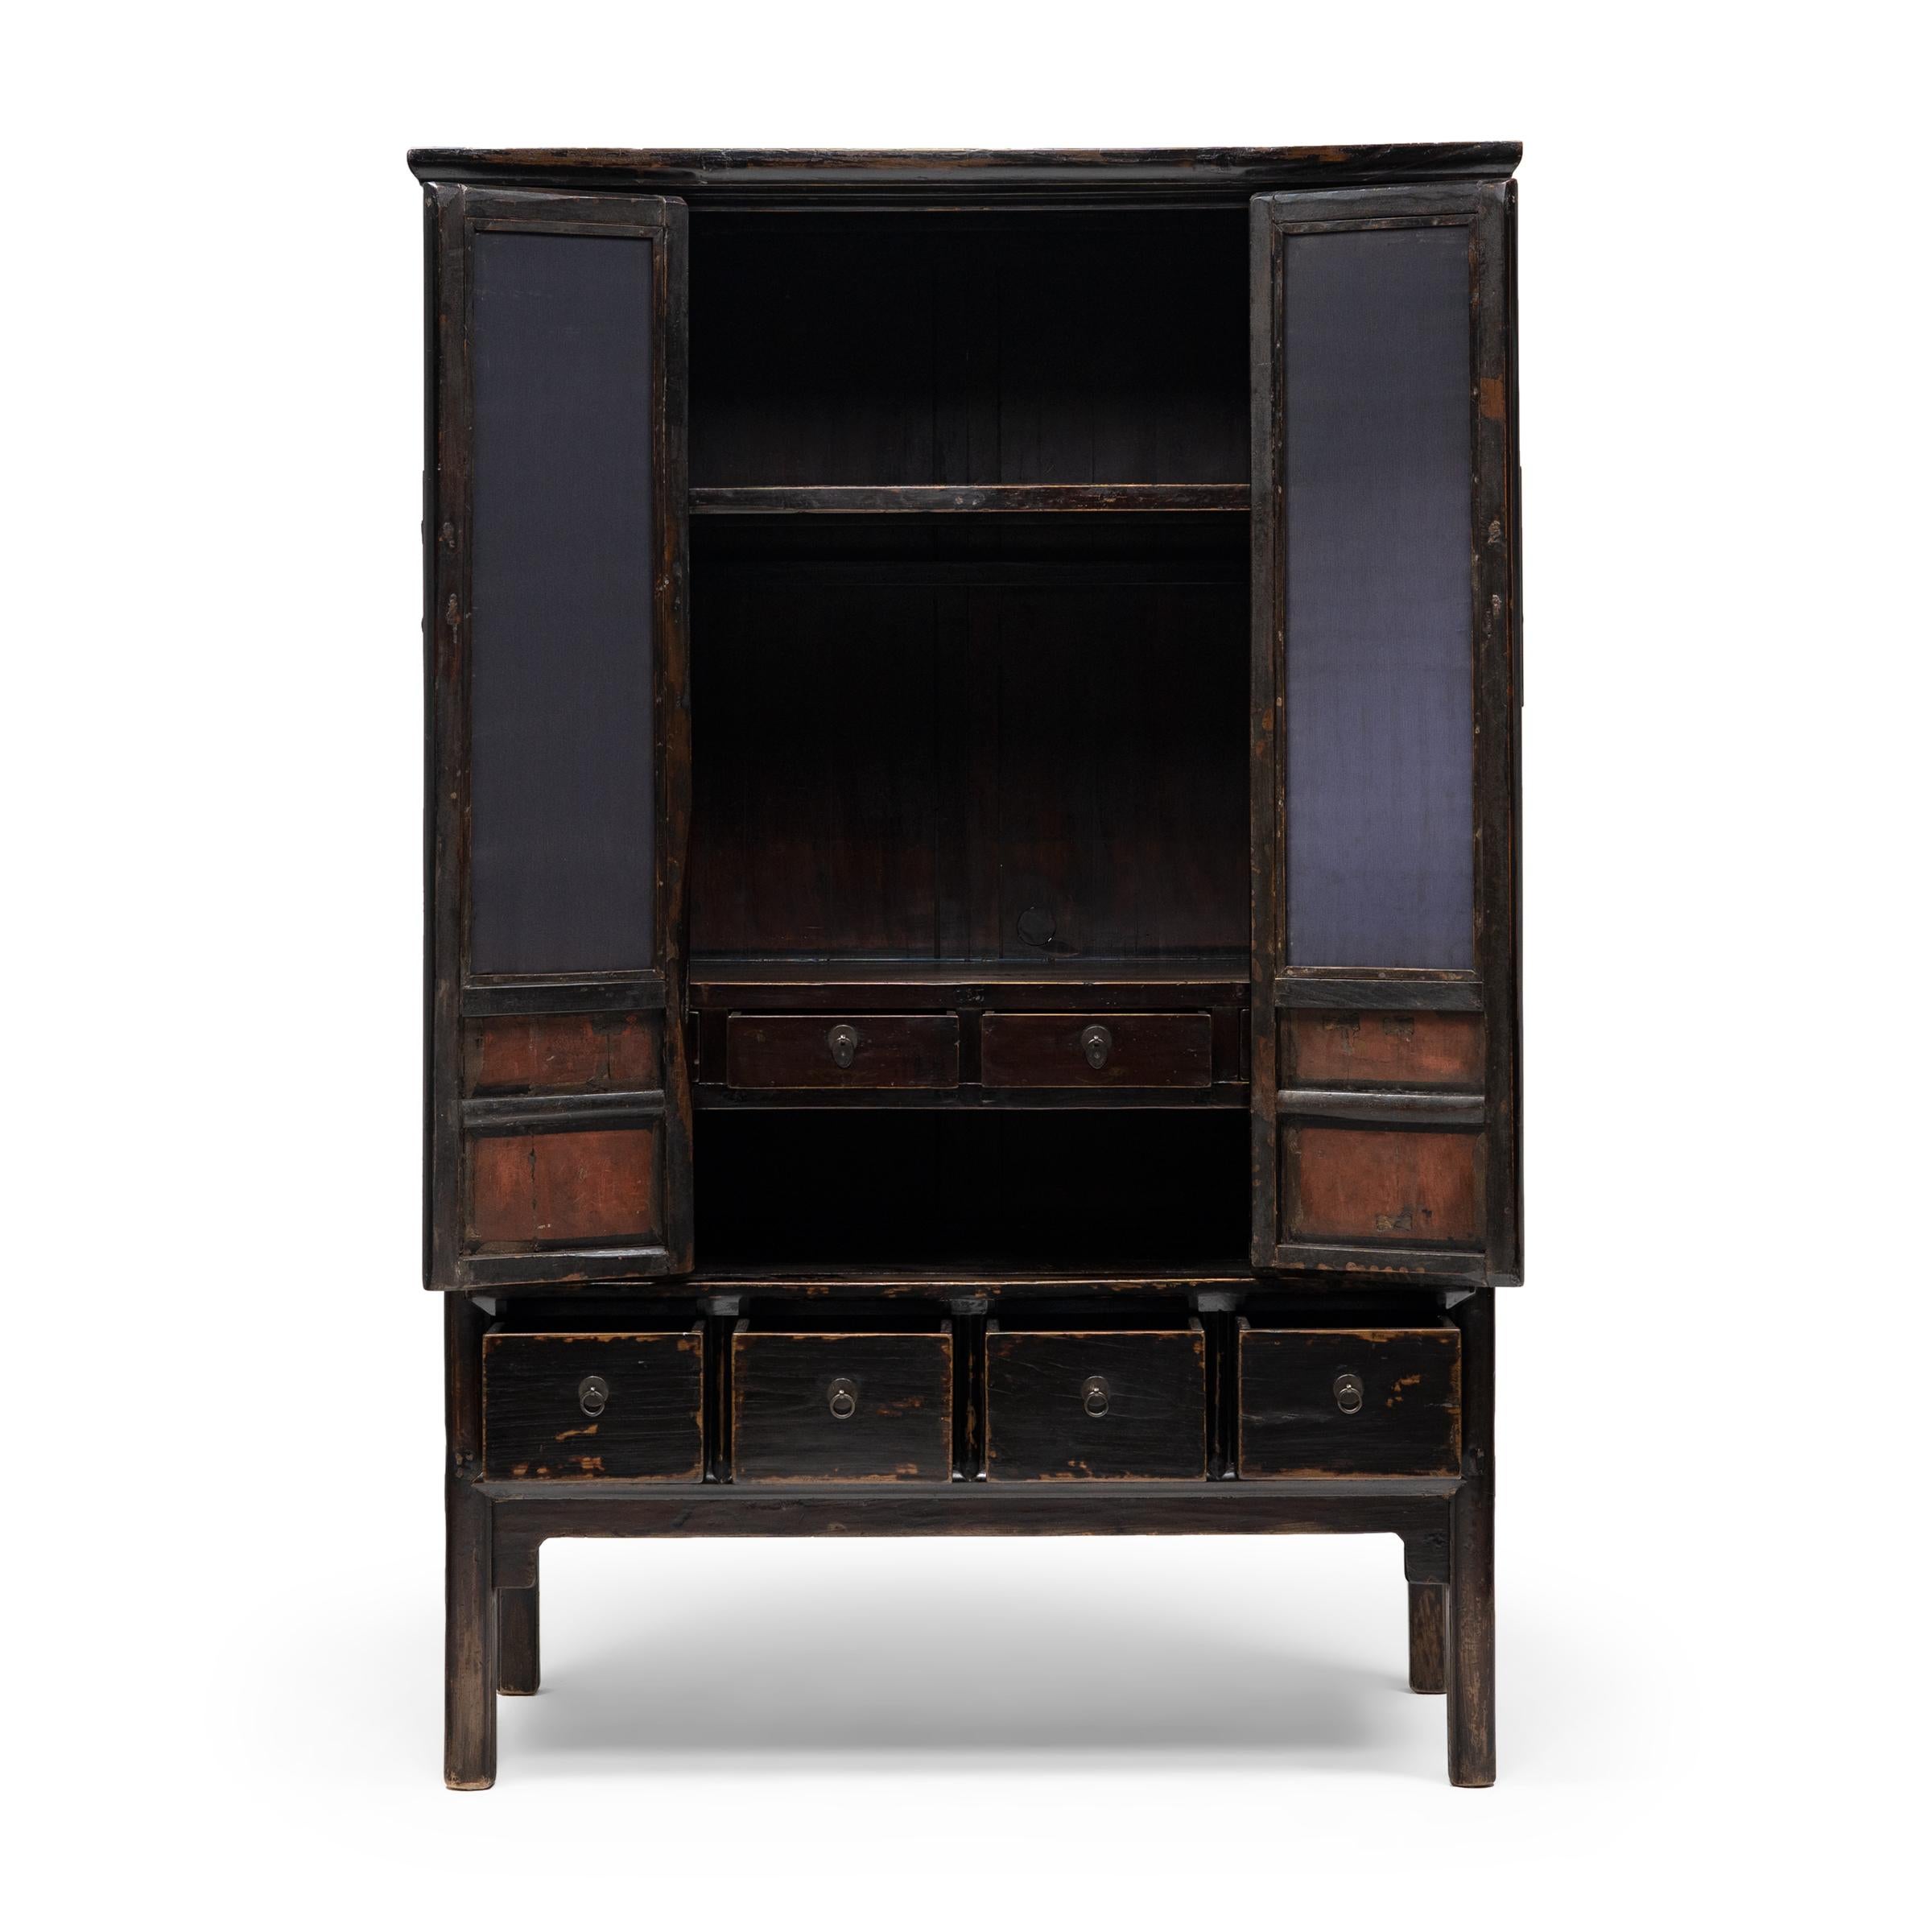 Avec ses lignes épurées et sa finition laquée sombre, ce meuble d'angle carré célèbre la sobriété des formes classiques du mobilier chinois. Datée du milieu du XIXe siècle, cette grande armoire est fabriquée en bois d'orme avec une menuiserie